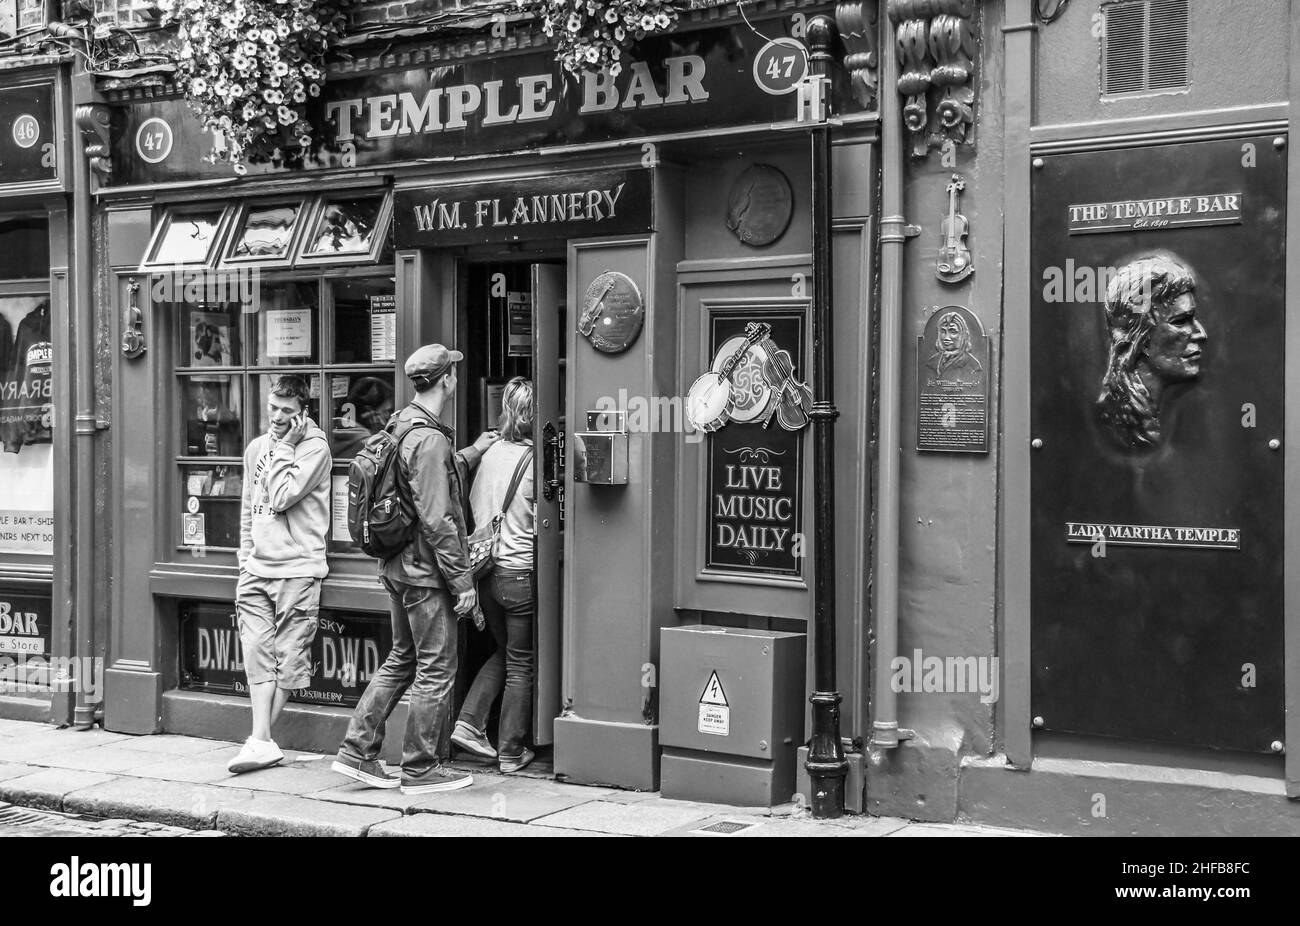 Zwei Jugendliche betreten die Temple Bar a Dublino, ein weiterer männlicher Jugendlicher telefoniert in lässiger Haltung mit seinem smartphone Foto Stock